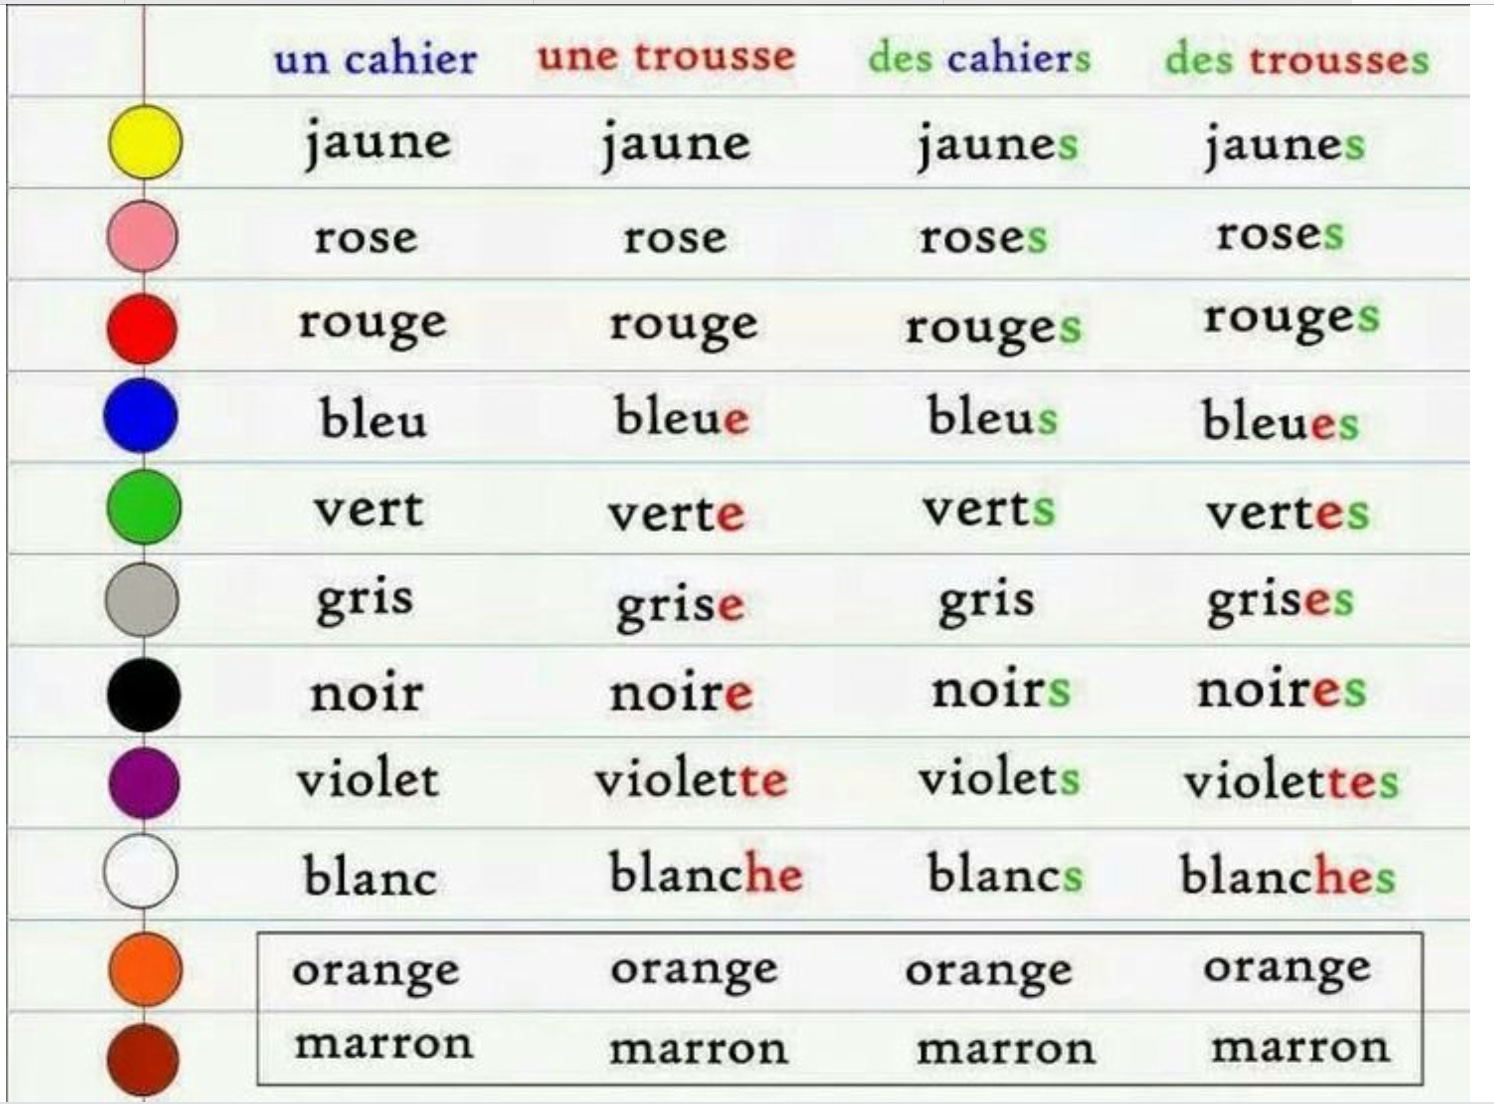 Цвета на французском языке